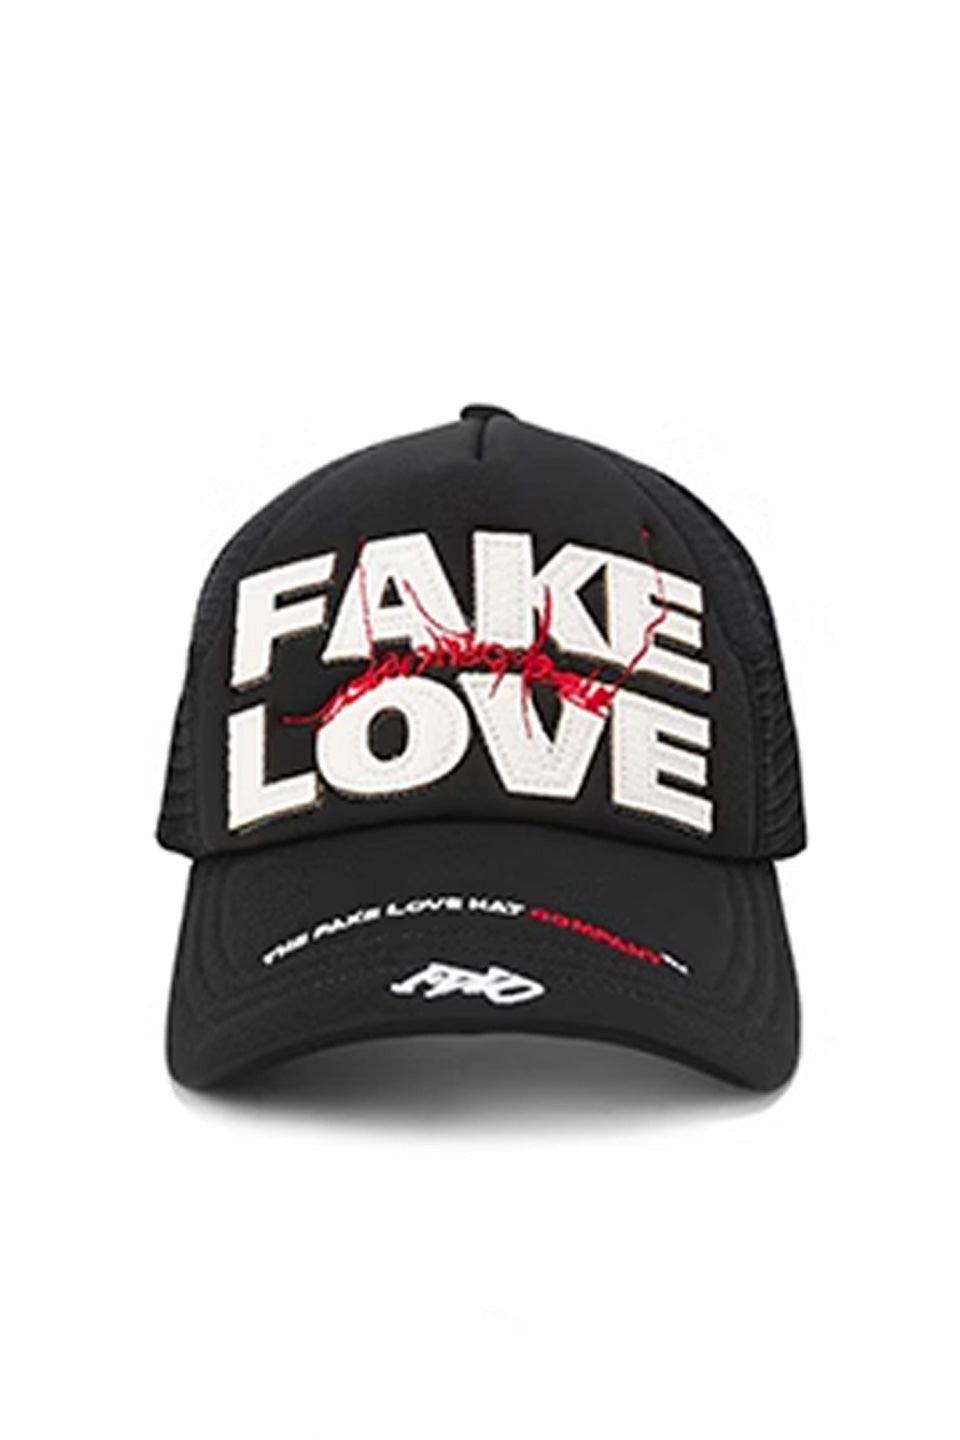 Fake Love Cap